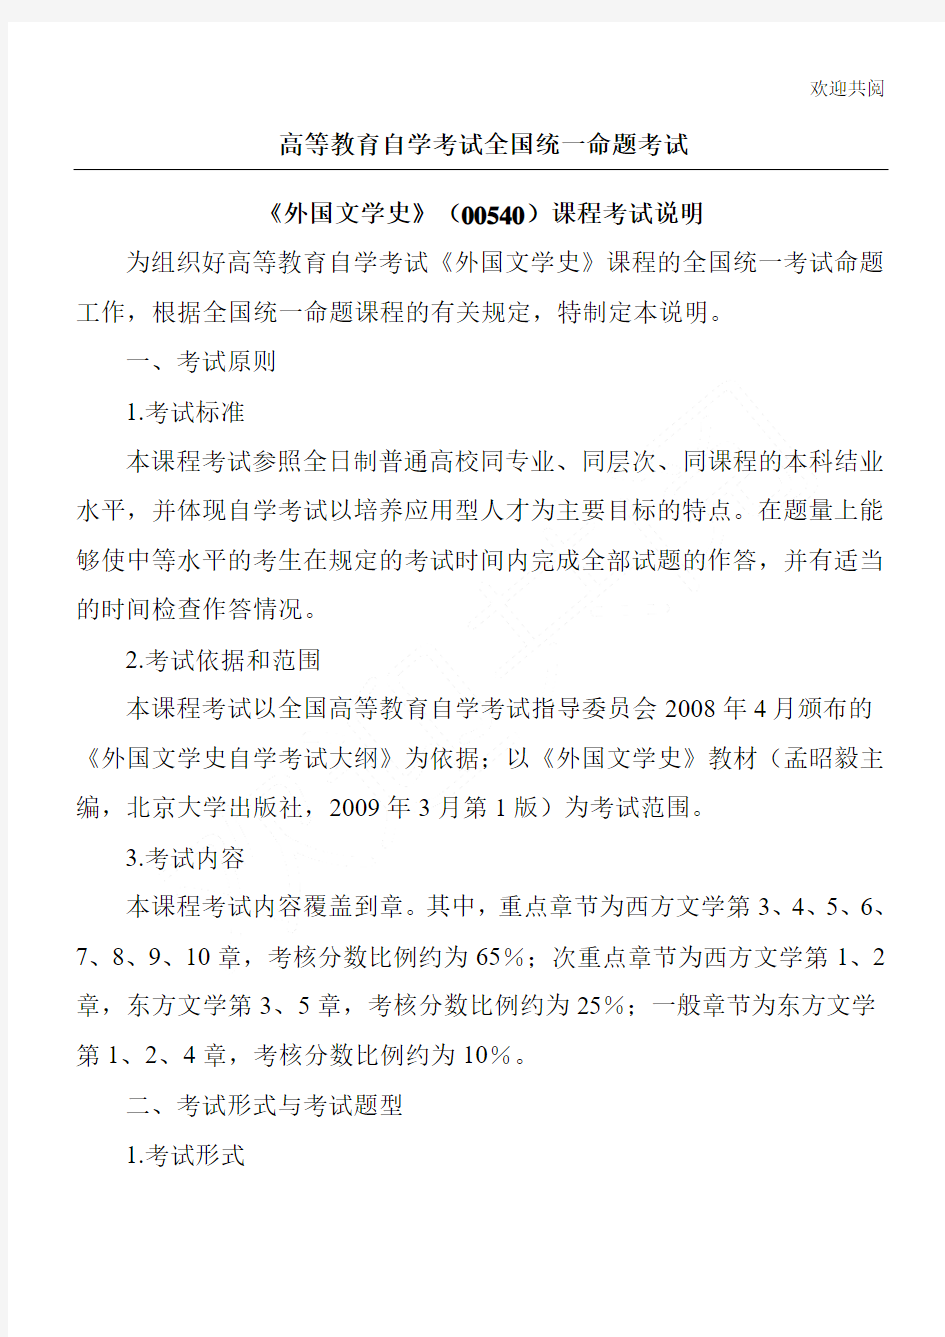 全国高等教育自学考试汉语言文学专业(独立本科段)